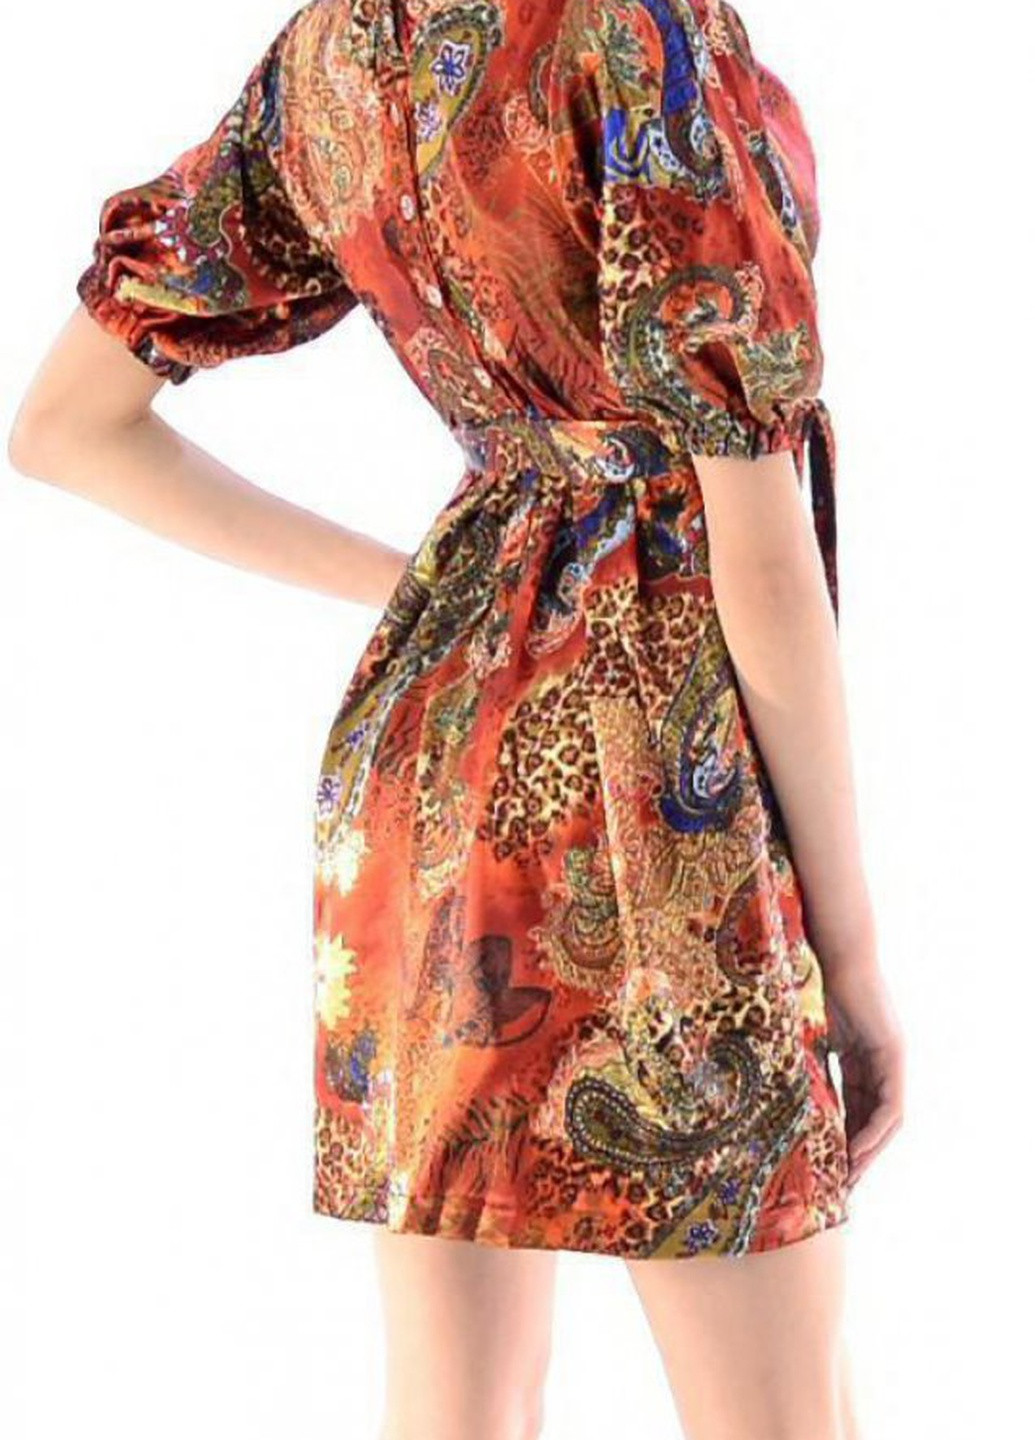 Червона літні сукні плаття атласне (221)11177-674 Lemanta